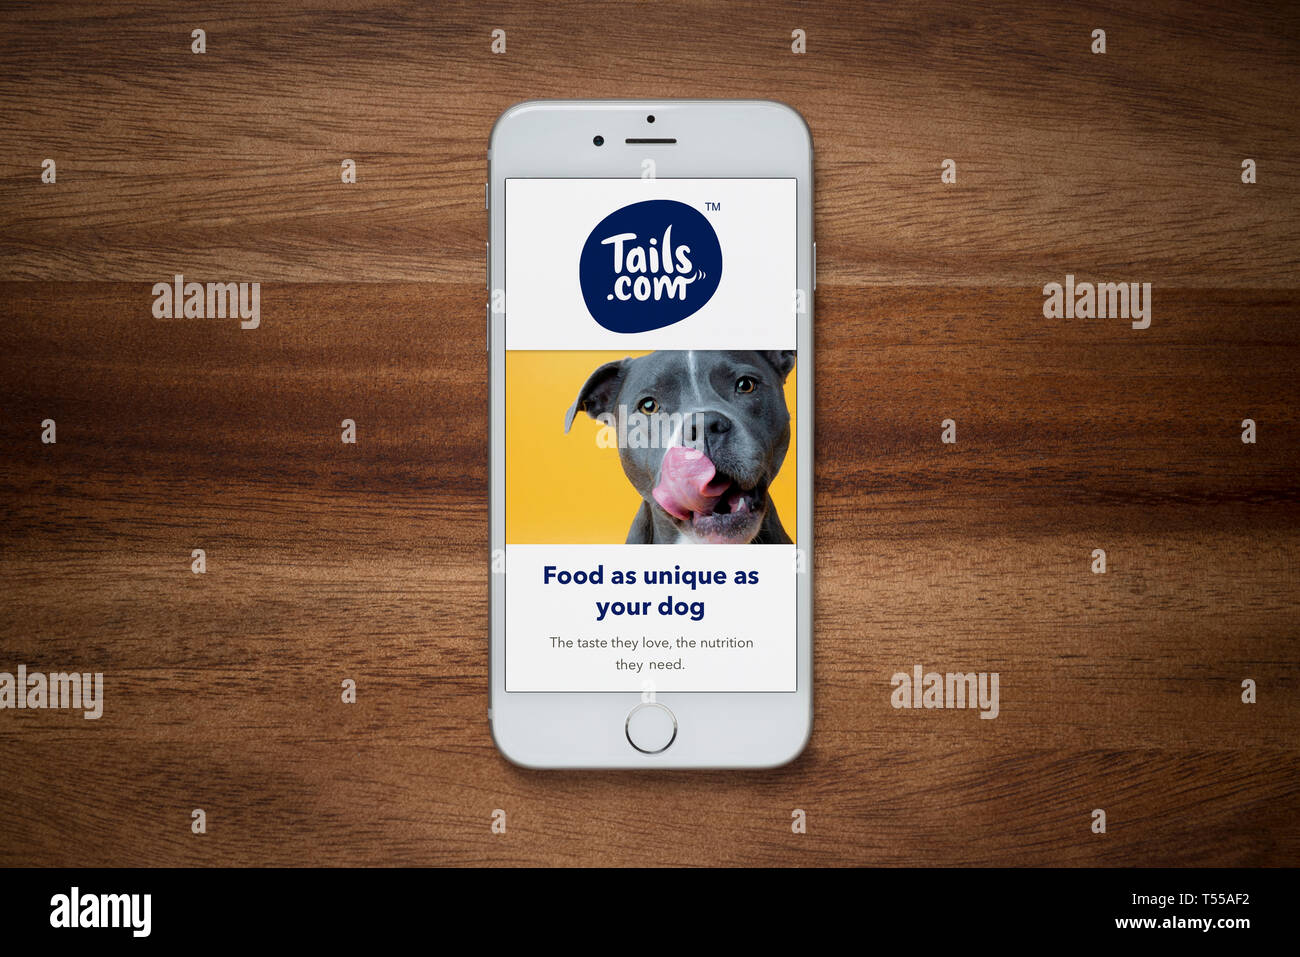 Ein iPhone mit der Tails.com Website beruht auf einem einfachen Holztisch (nur redaktionelle Nutzung). Stockfoto